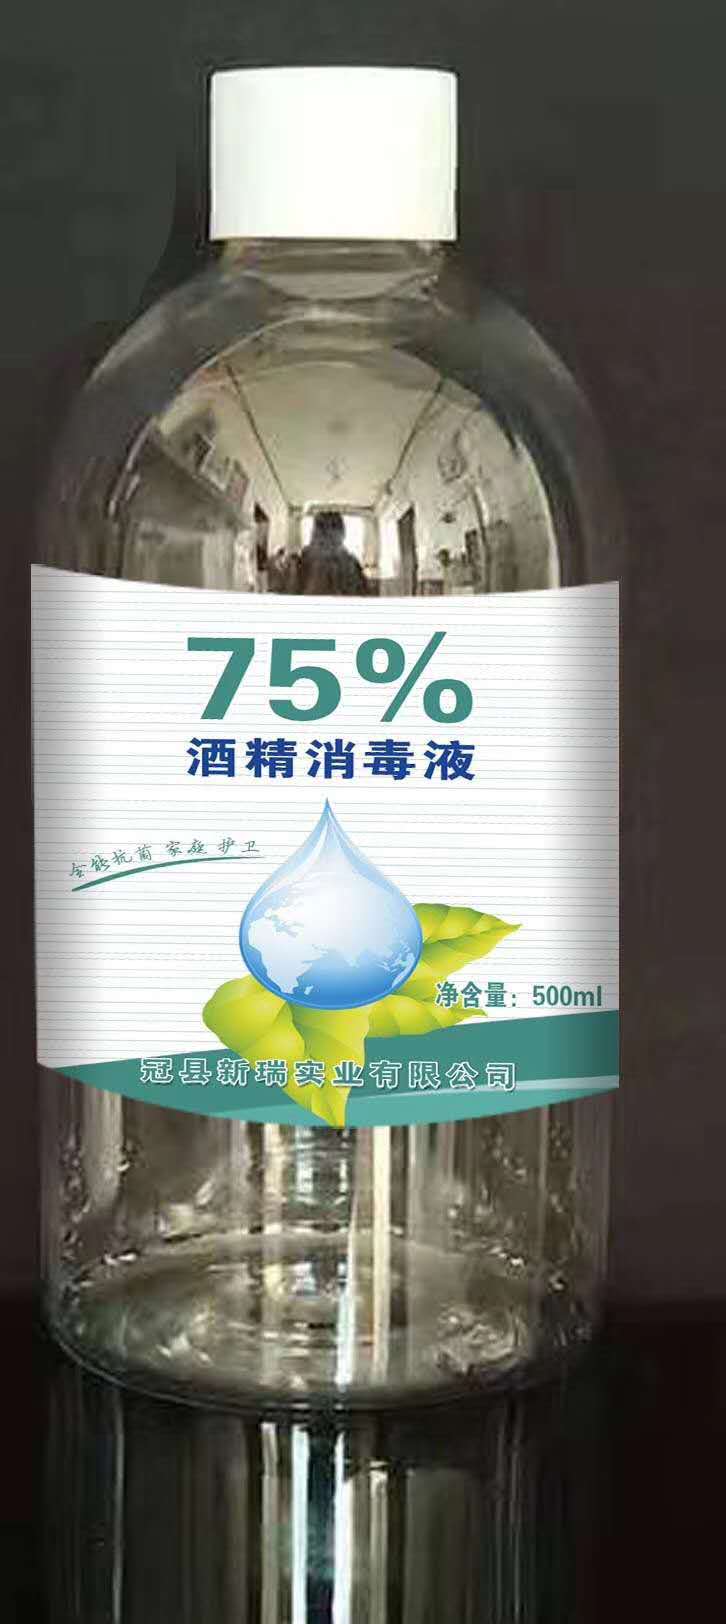 山东聊城消毒酒精液 供应  家用消毒专用75%酒精消毒液